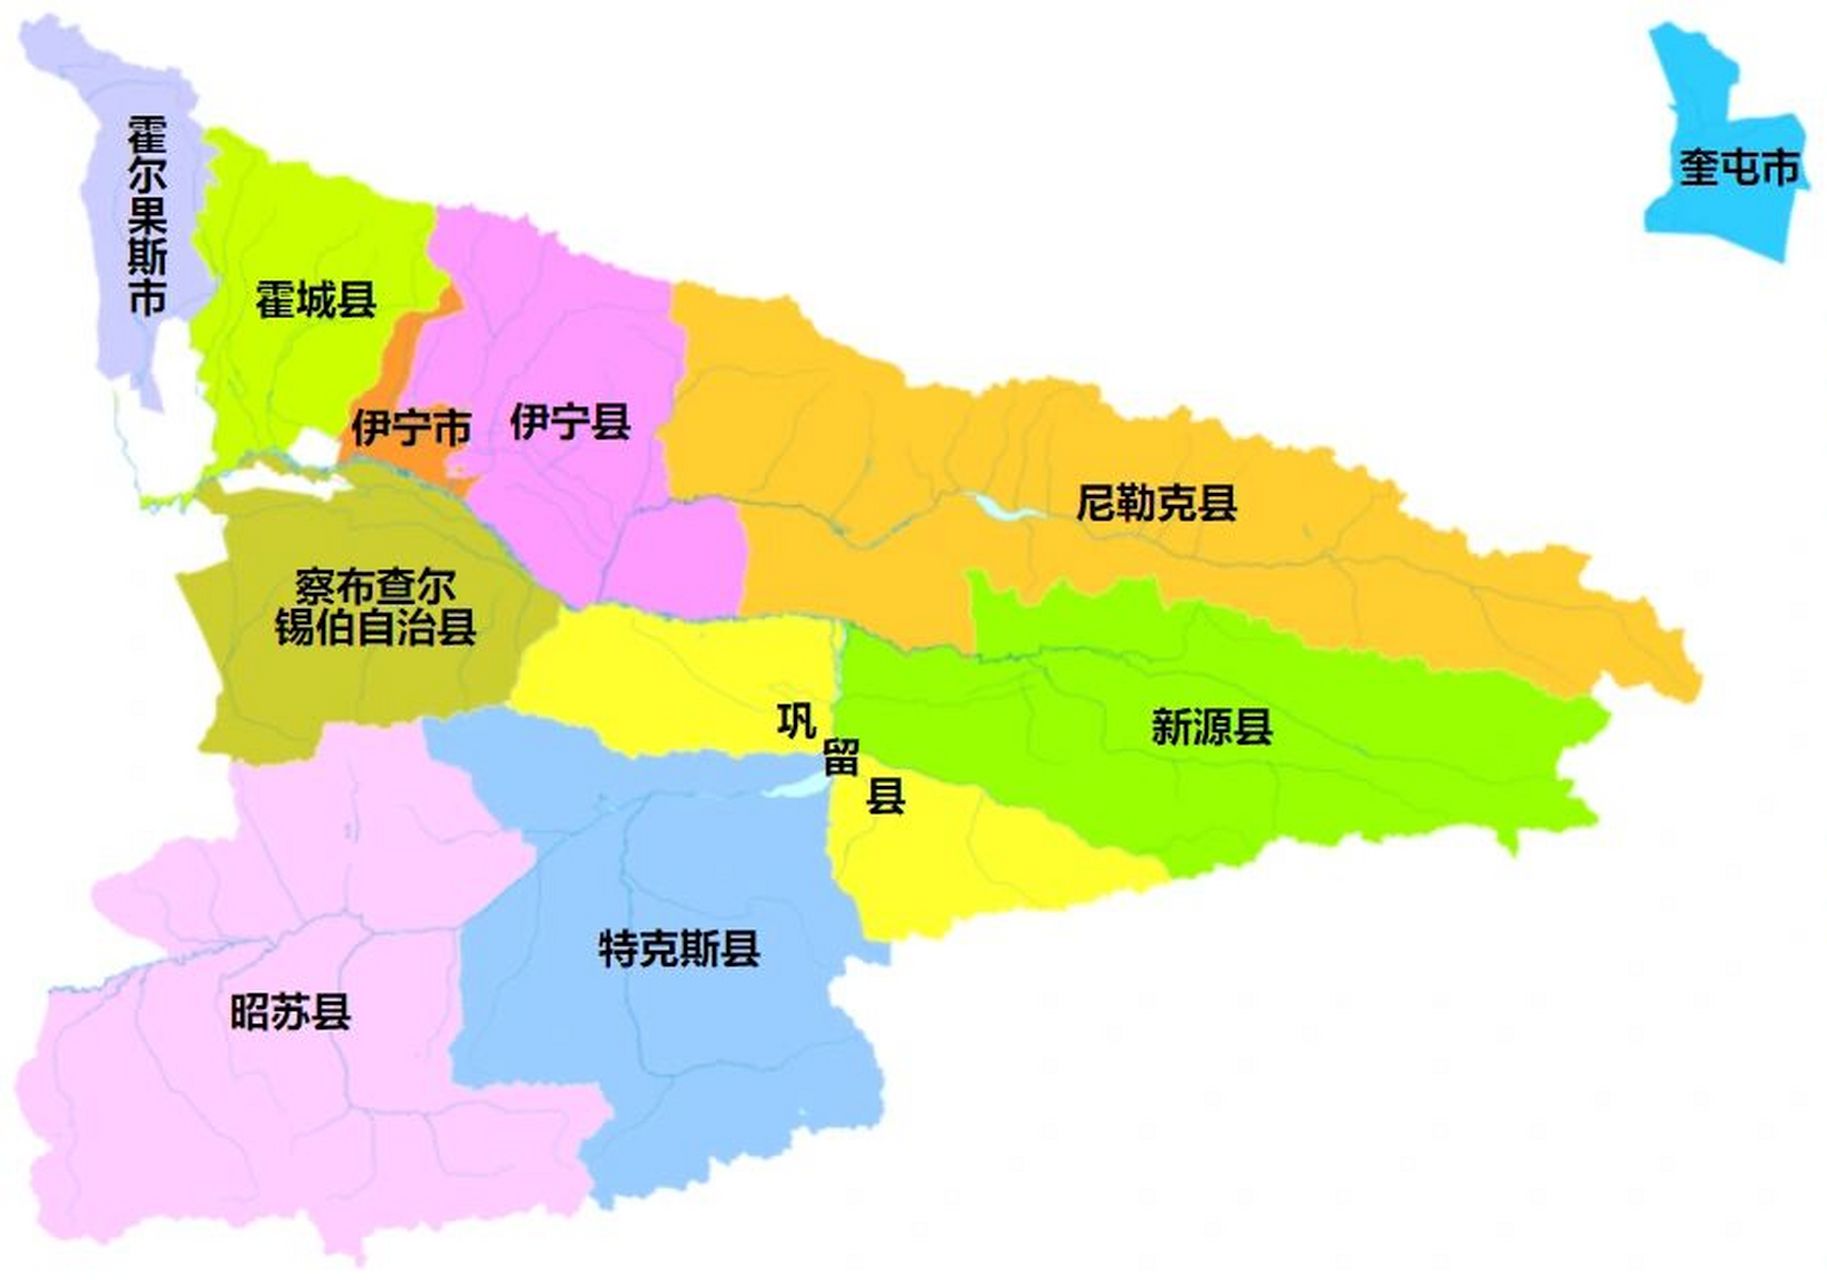 伊犁行政区划 伊犁哈萨克自治州,新疆维吾尔自治区辖自治州,总面积为